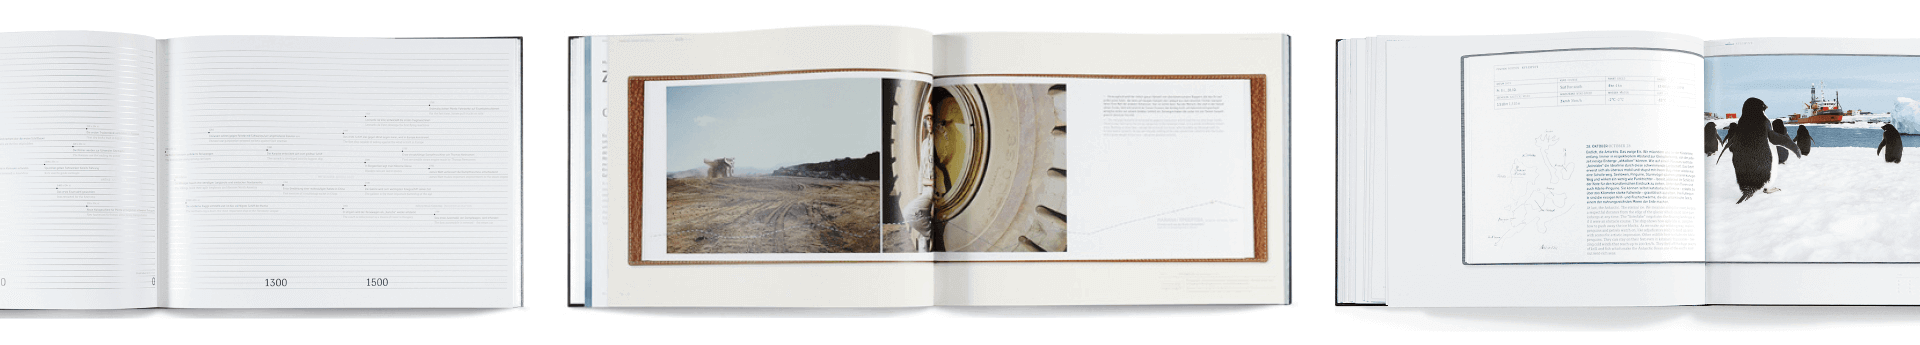 Doppelseiten mit Fotgrafie und Infografik aus ThyssenKrupp Corporate Book Discover Steel